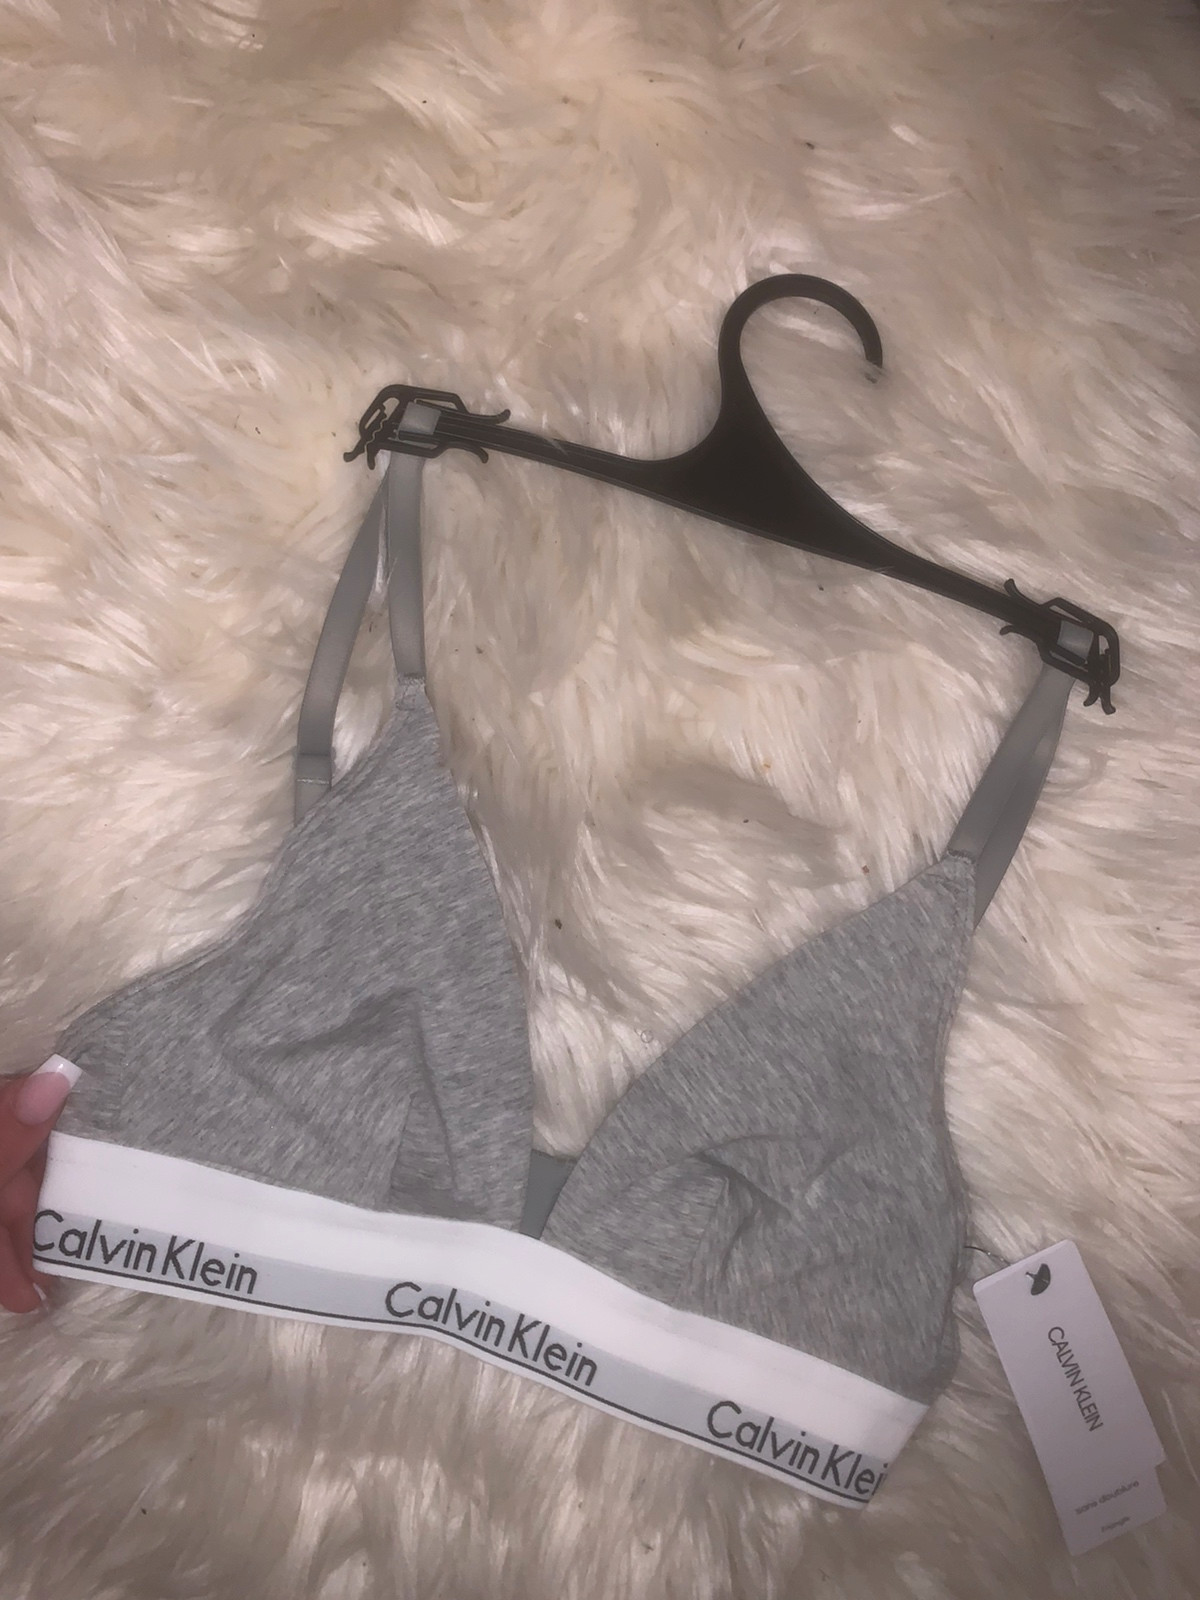 Calvin Klein Underwear, Intimates & Sleepwear, Nwt Calvin Klein Set